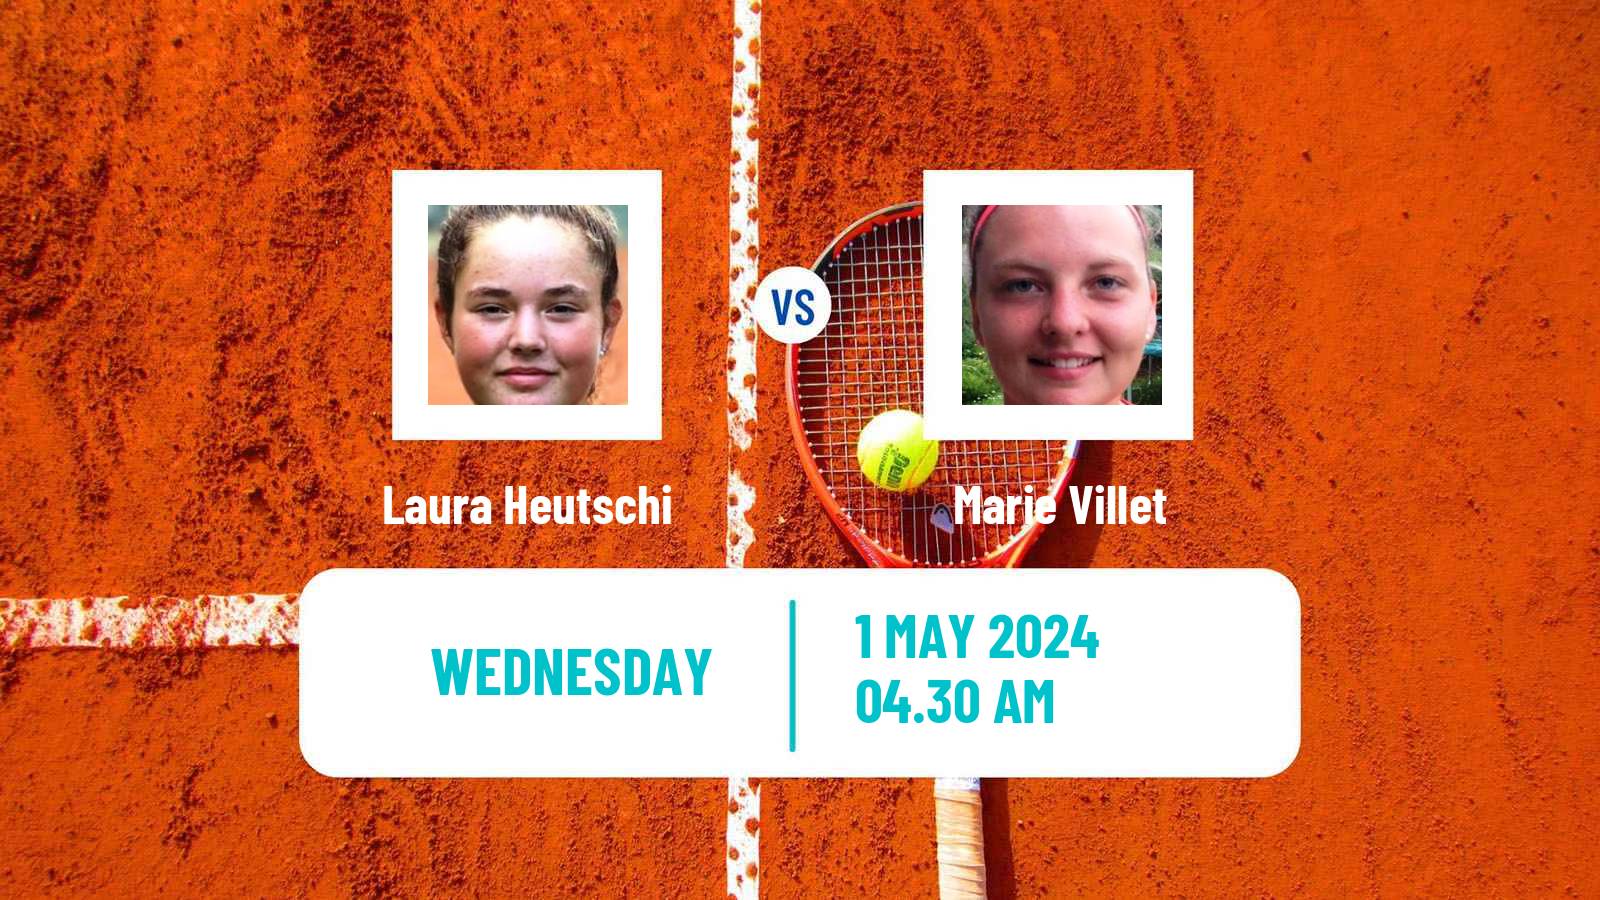 Tennis ITF W15 Monastir 16 Women Laura Heutschi - Marie Villet